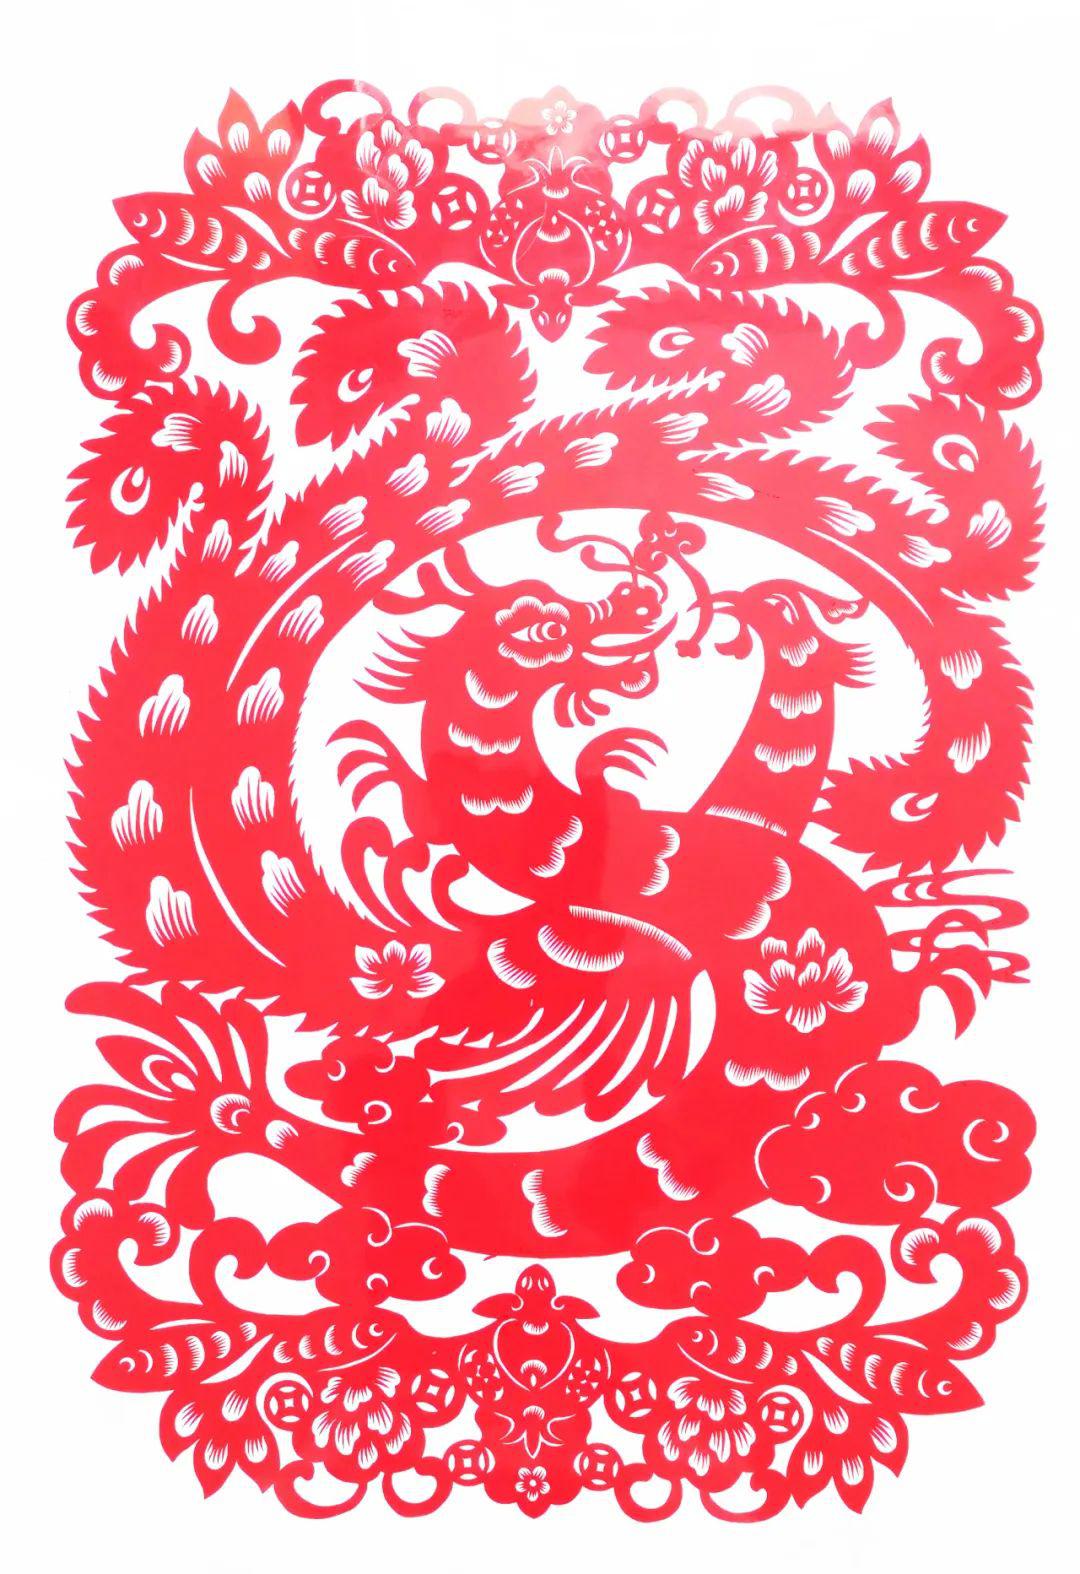 中国民间剪纸微刊《百年献瑞迎新年》全国龙文化剪纸精品展览 图386